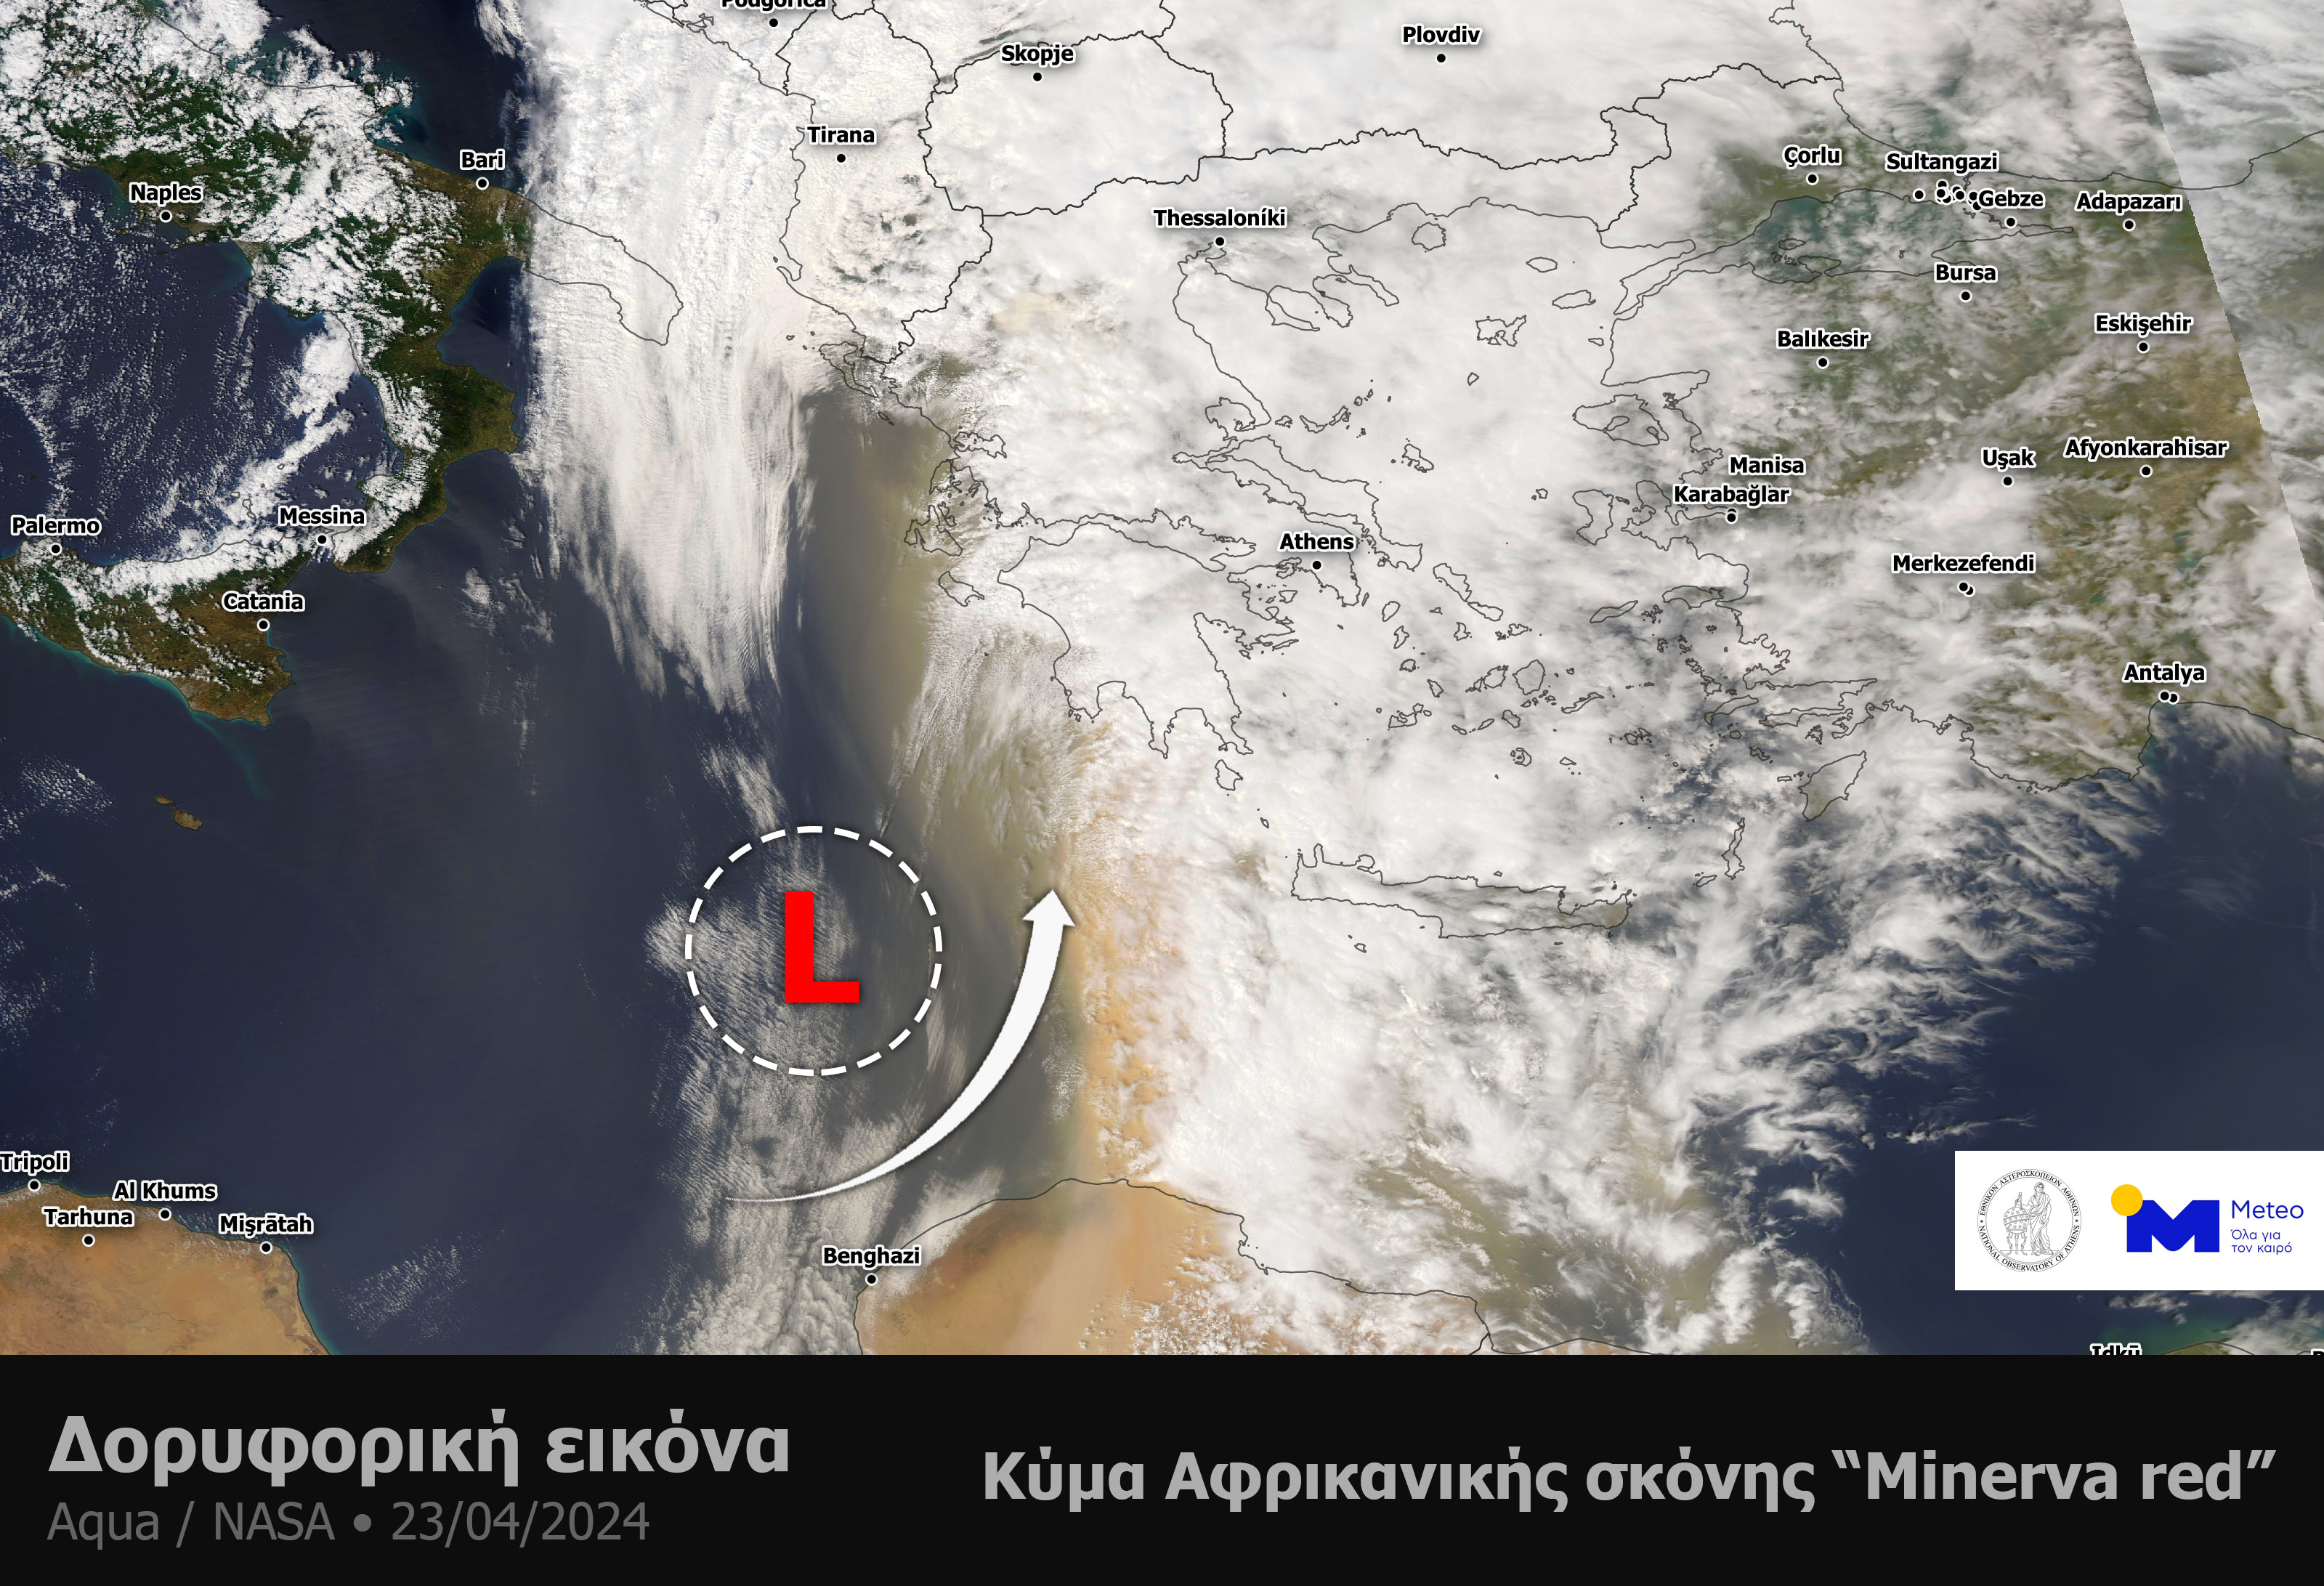 Εικόνα 1. Δορυφορική εικόνα από τον δορυφόρο AQUA της NASA το πρωί της Τρίτης 23 Απριλίου 2024 αποτυπώνει το έντονο κύμα Αφρικανικής σκόνης που έλαβε χώρα στην Ανατολική Μεσόγειο.